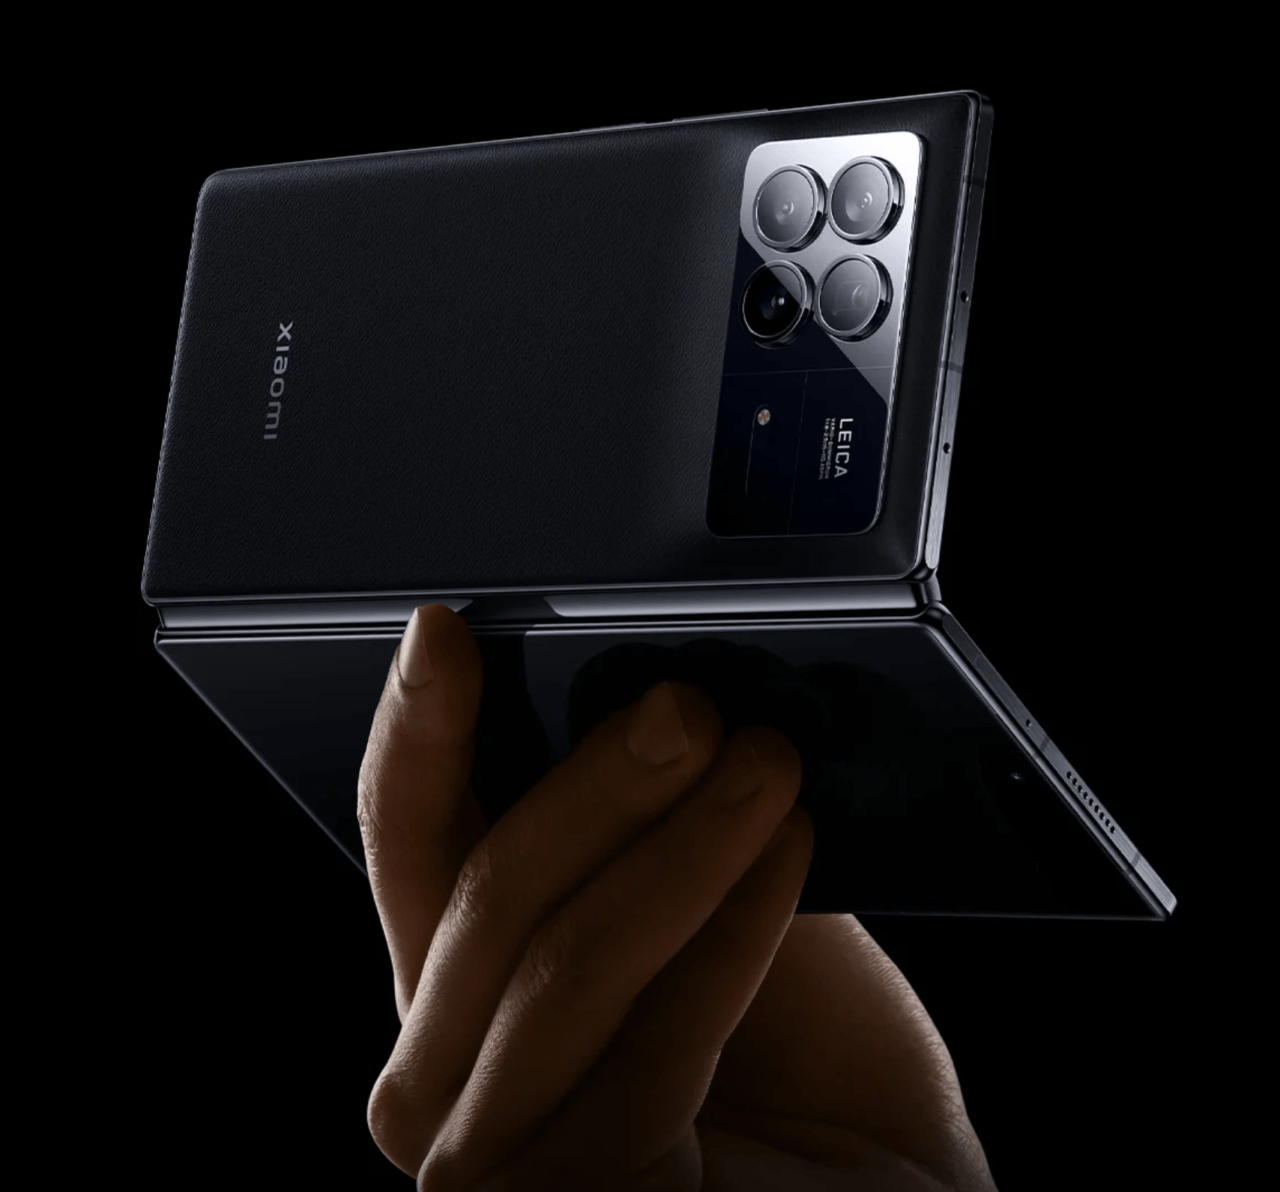 Składany smartfon trzymany w dłoni, z widocznym logo Leica i potrójnym układem aparatu na tylnej obudowie.